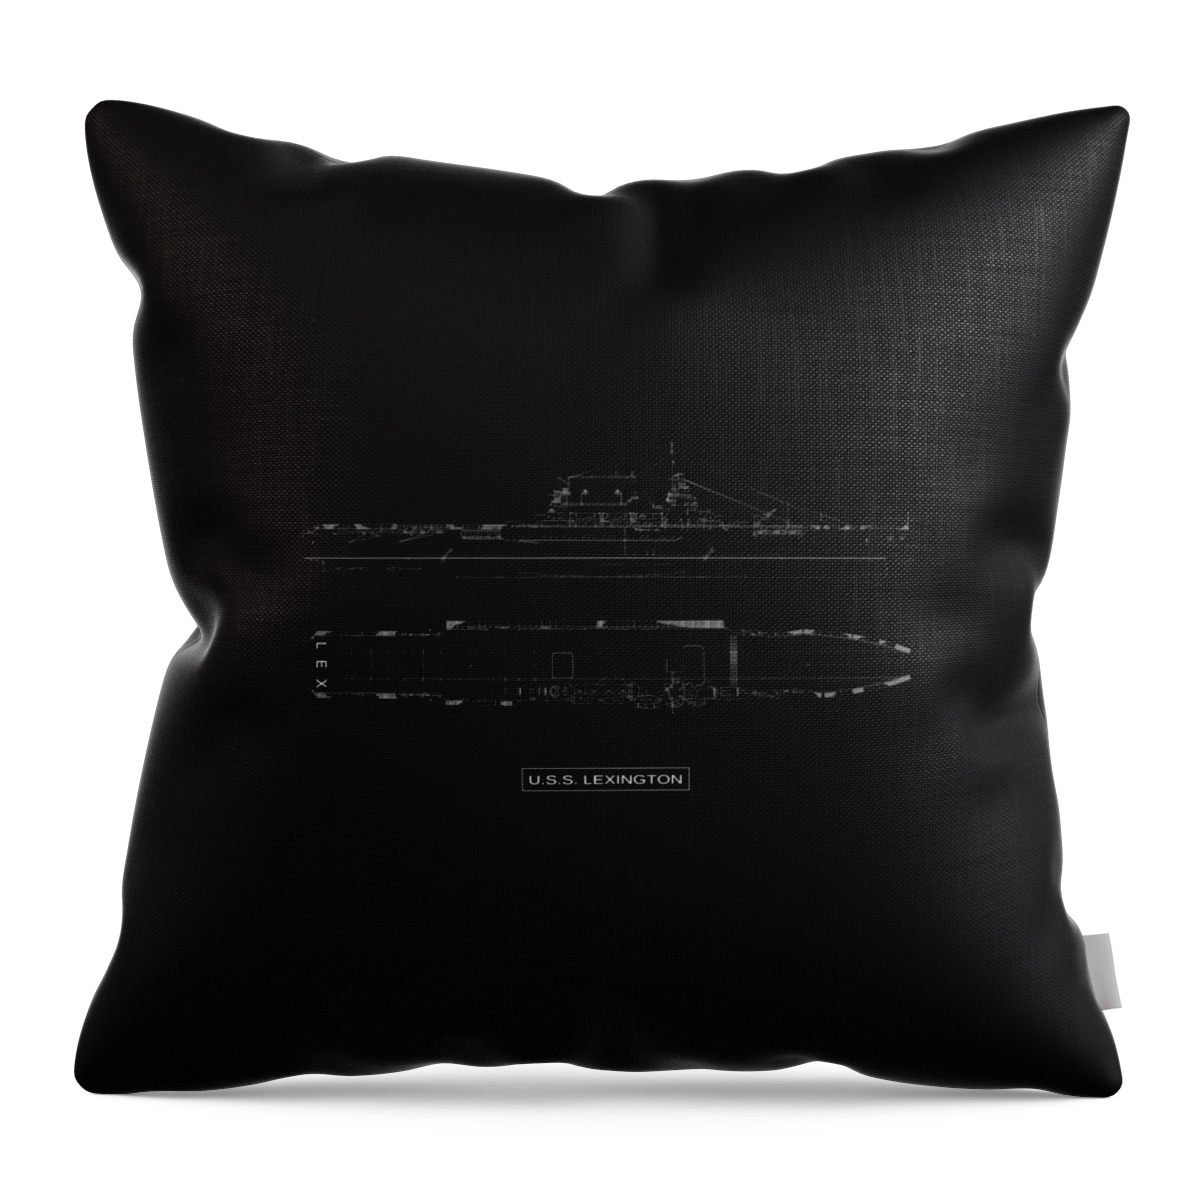 Uss Lexington Throw Pillow featuring the digital art USS Lexington by DB Artist